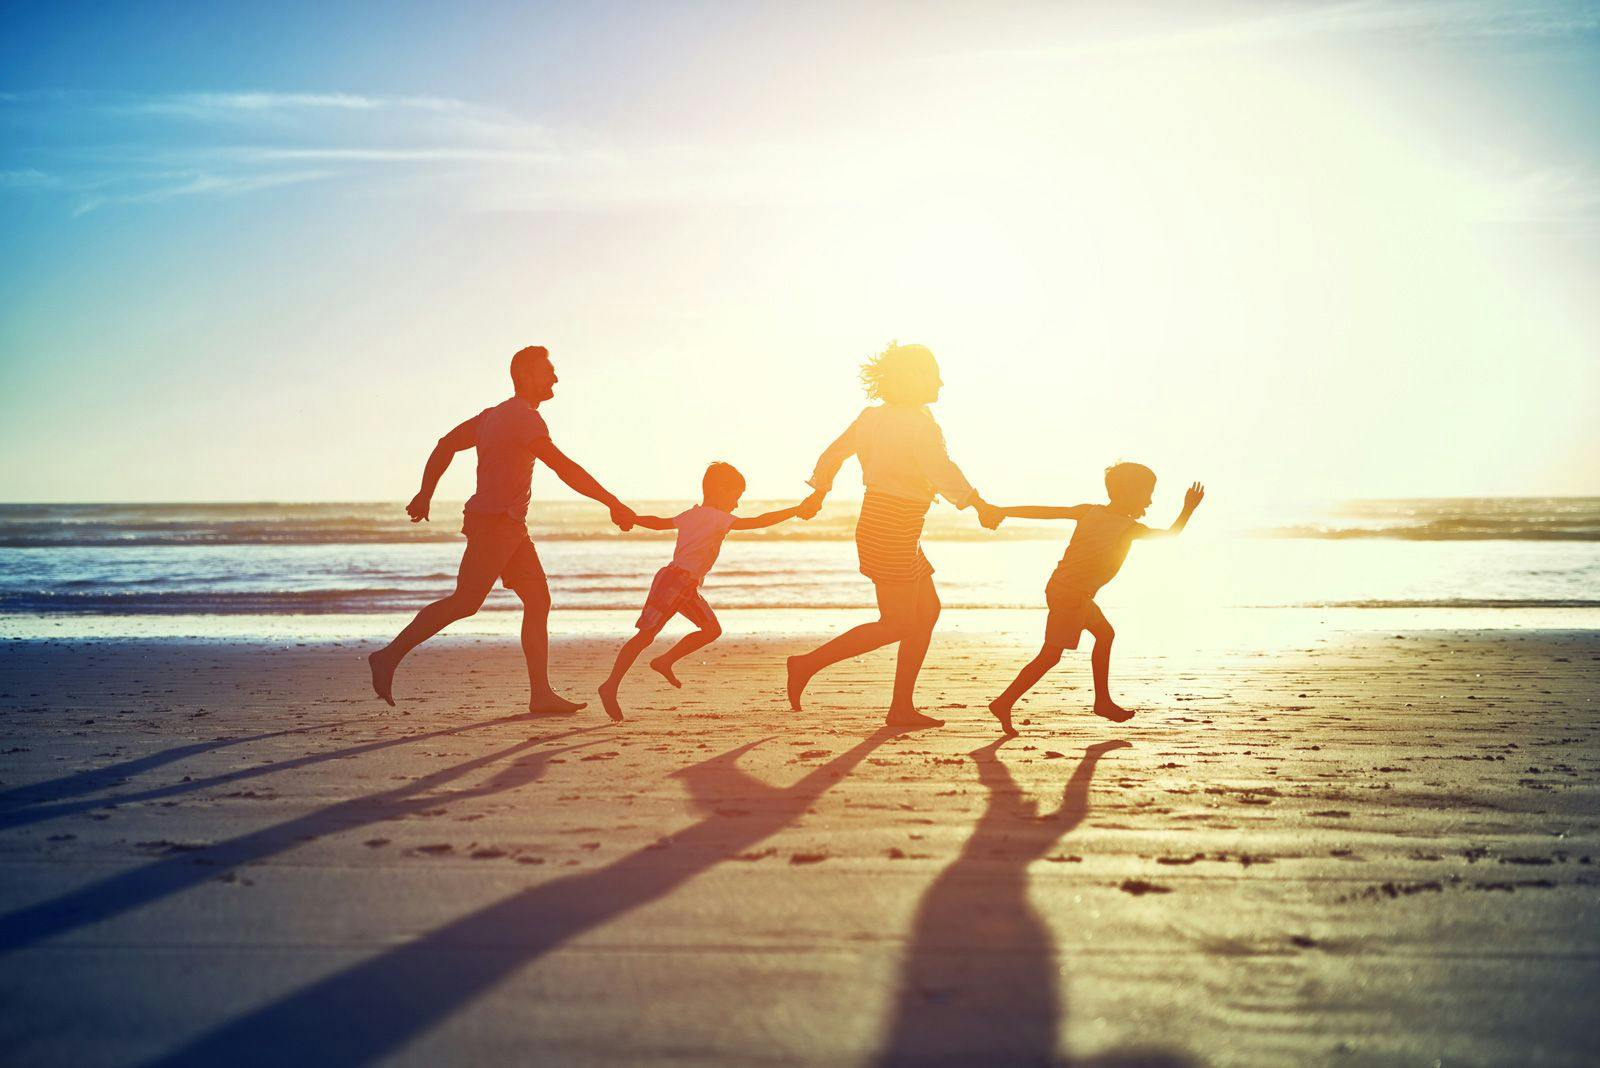 A family running across a beach at sunset